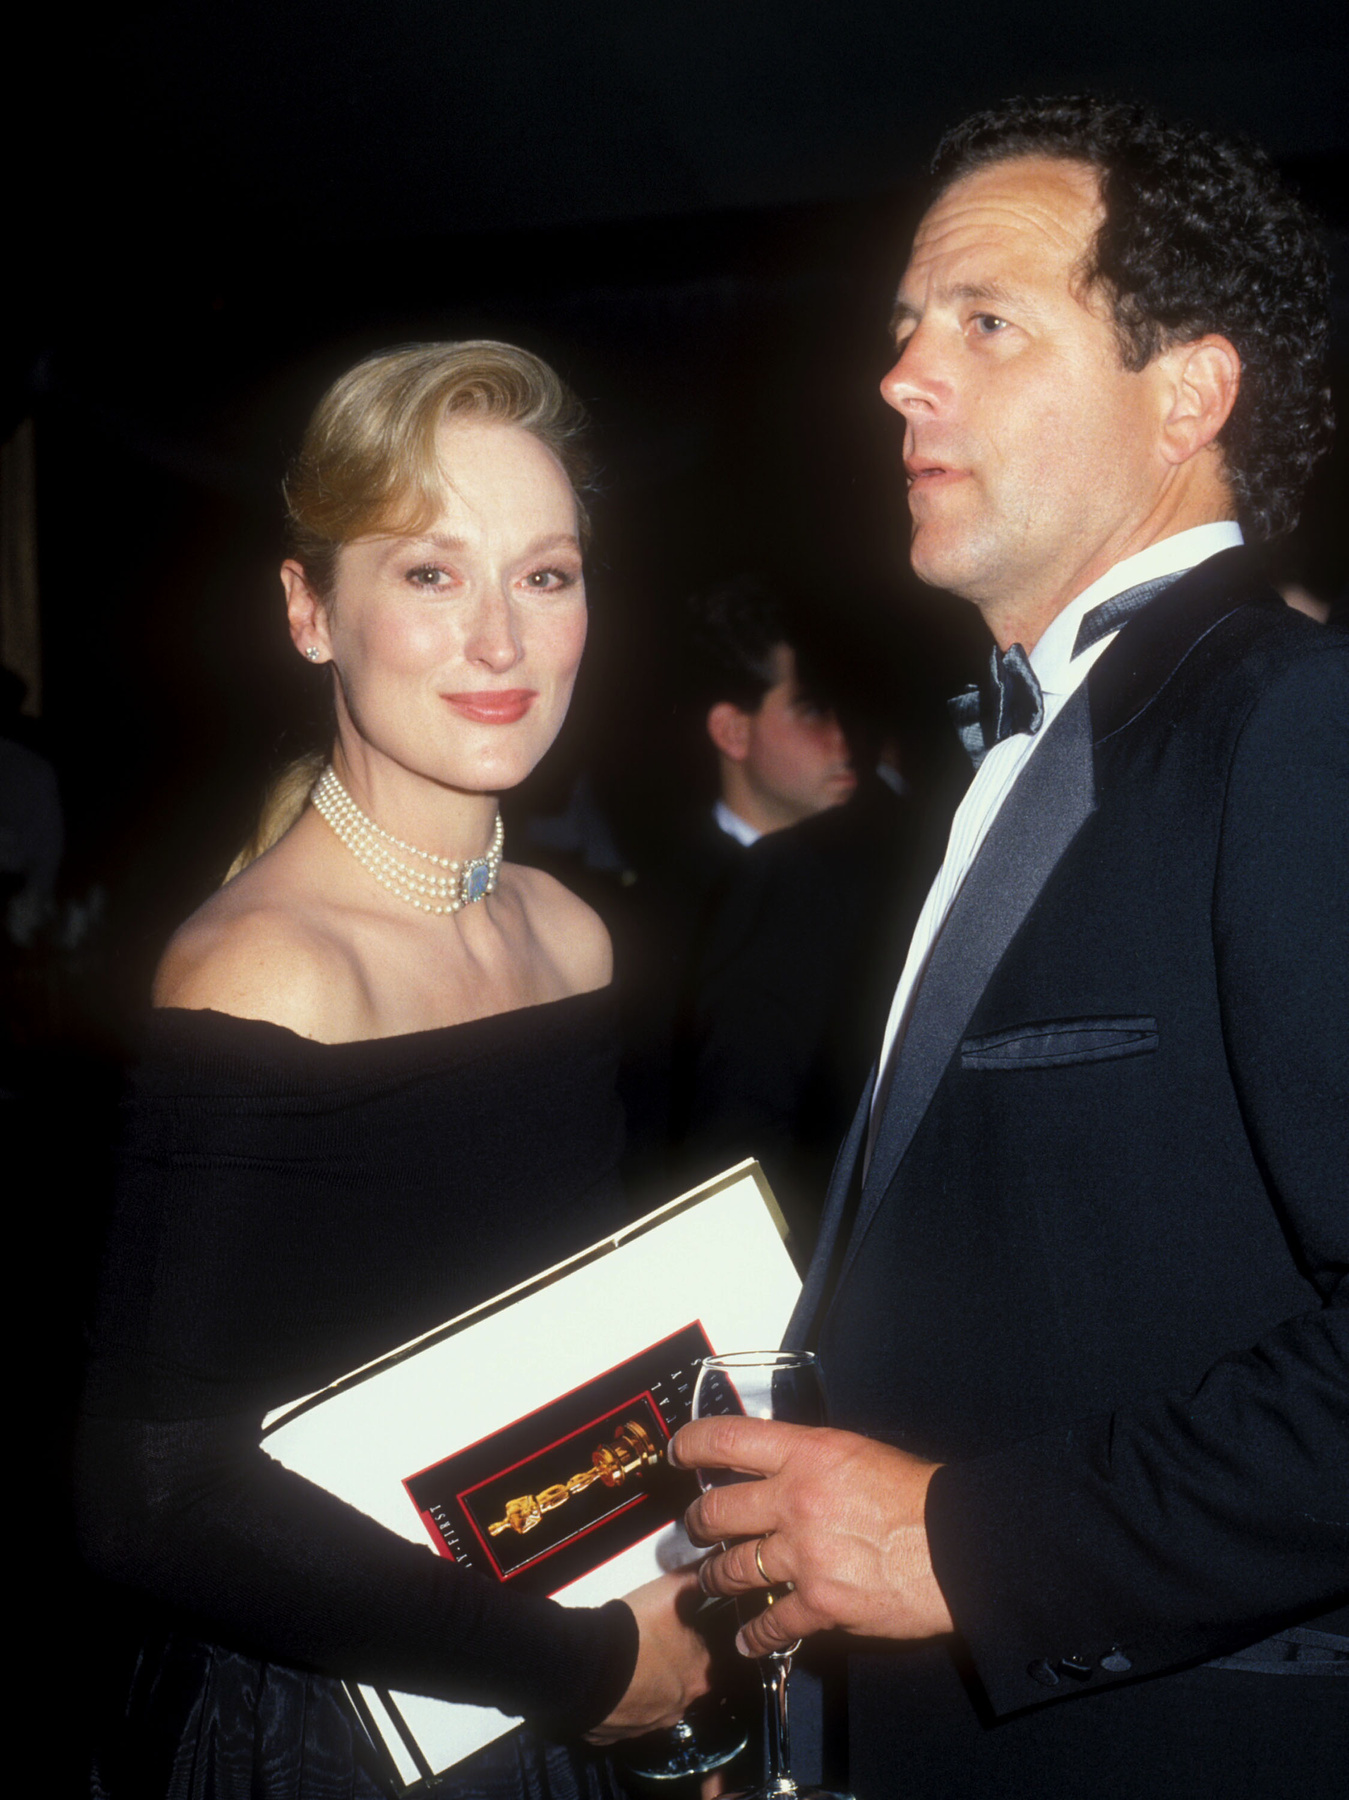 Klasszikus fekete-fehér összeállításban a 2014-es Oscar díjátadón férjével, Don Gummerrel.